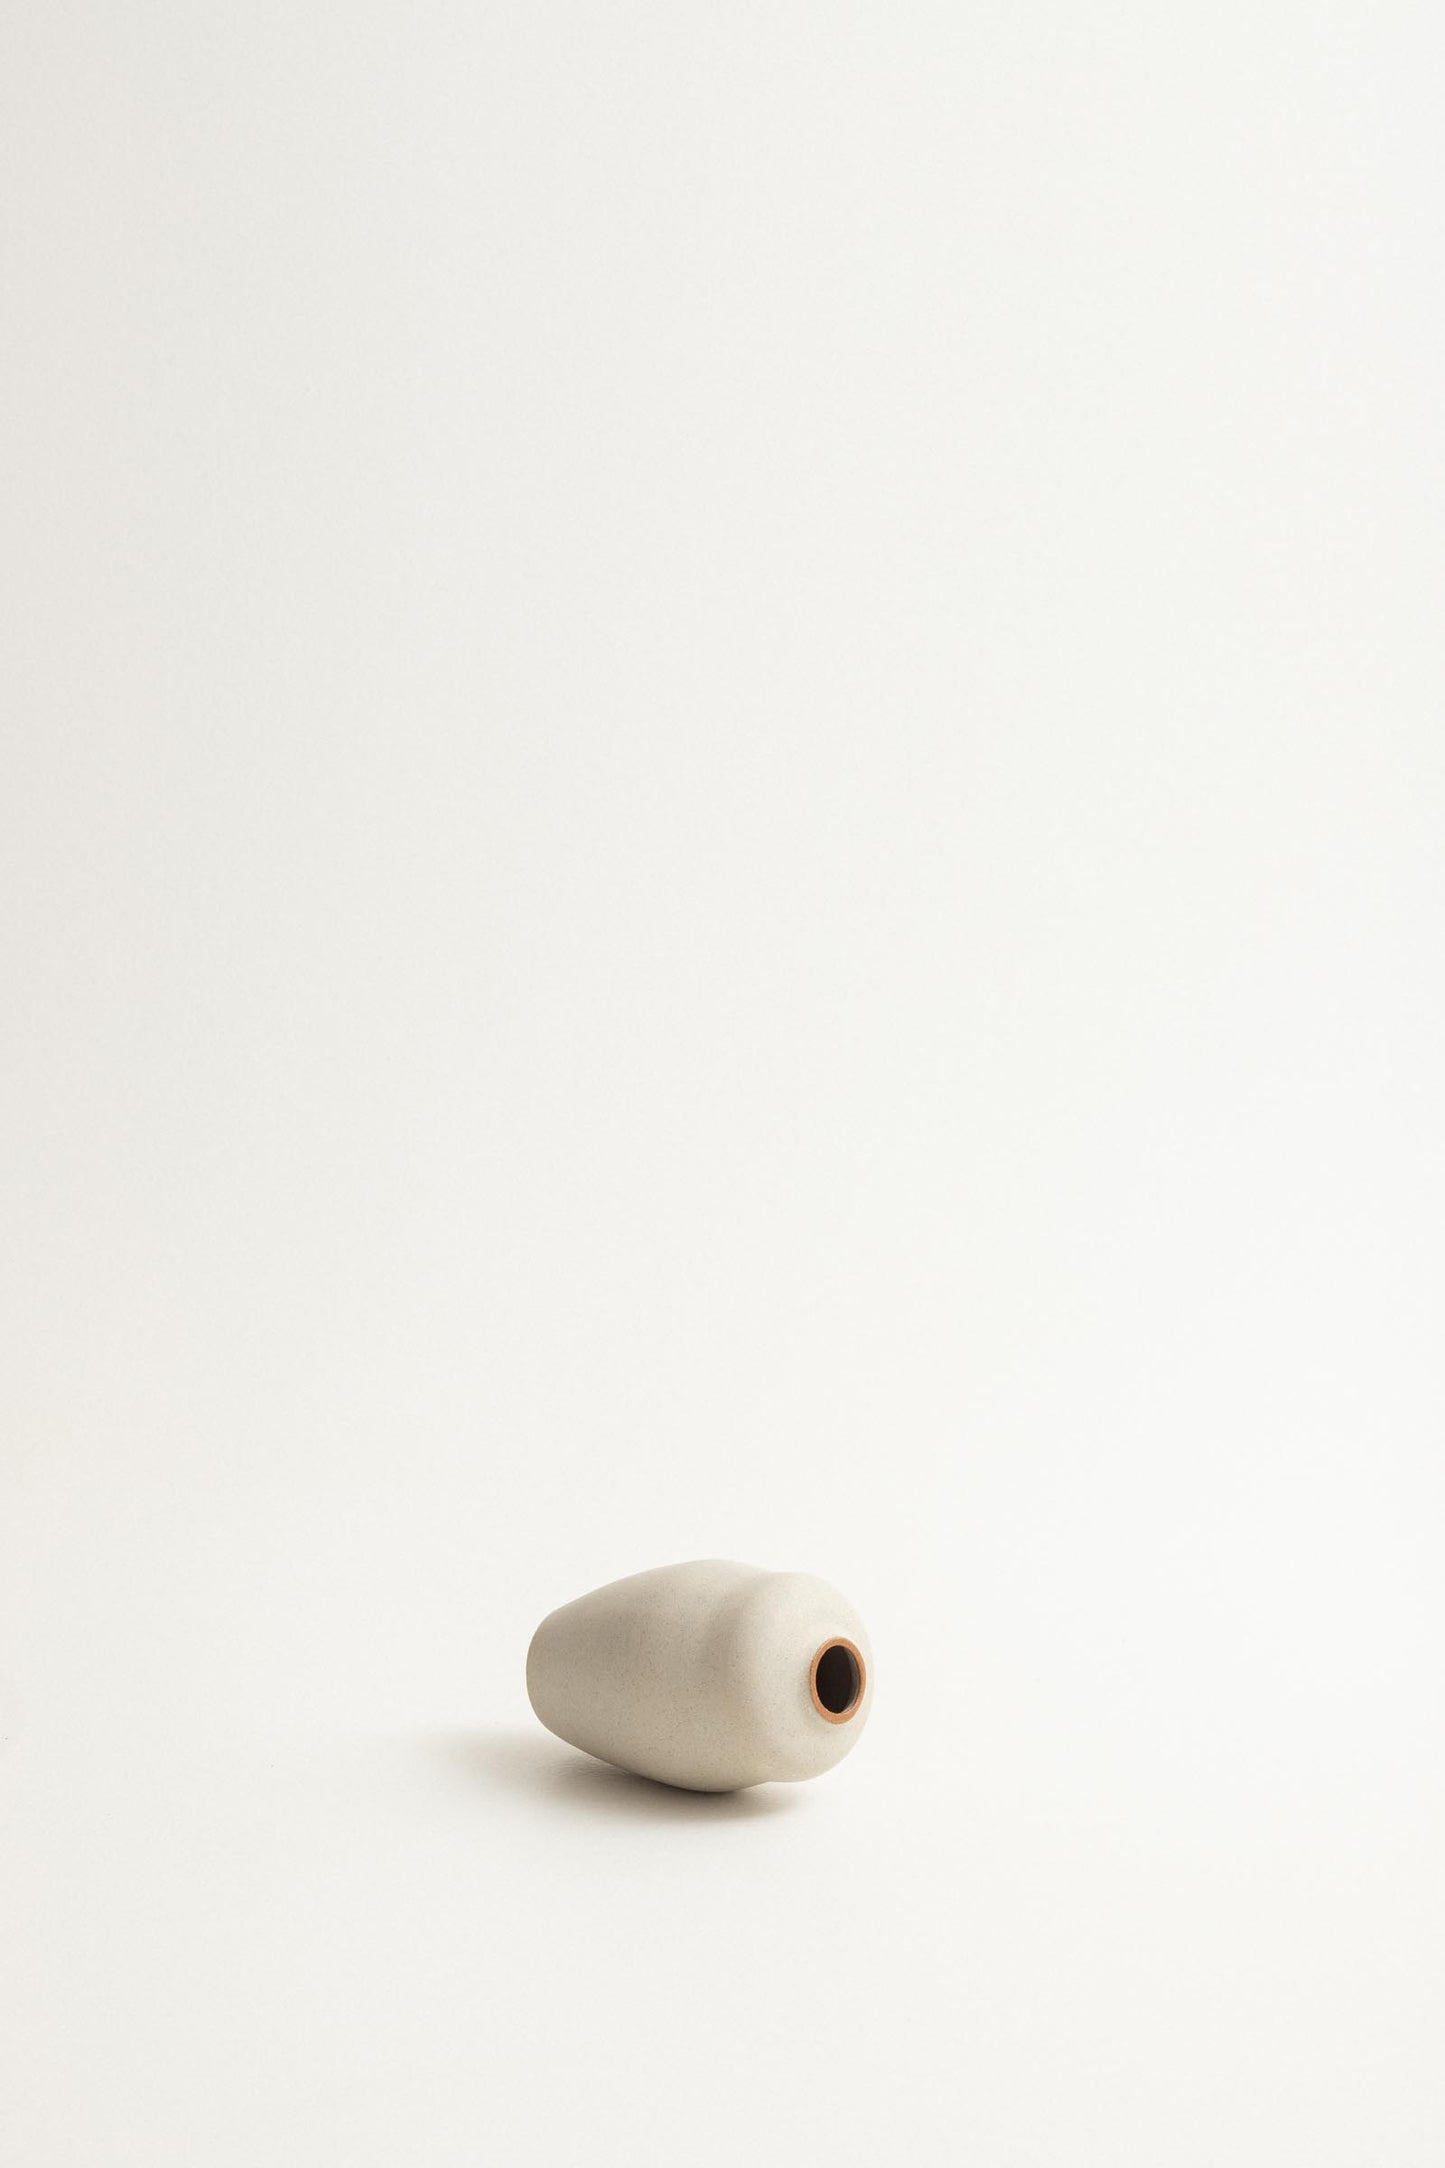 Narrow curvy vase - Fog / toasted